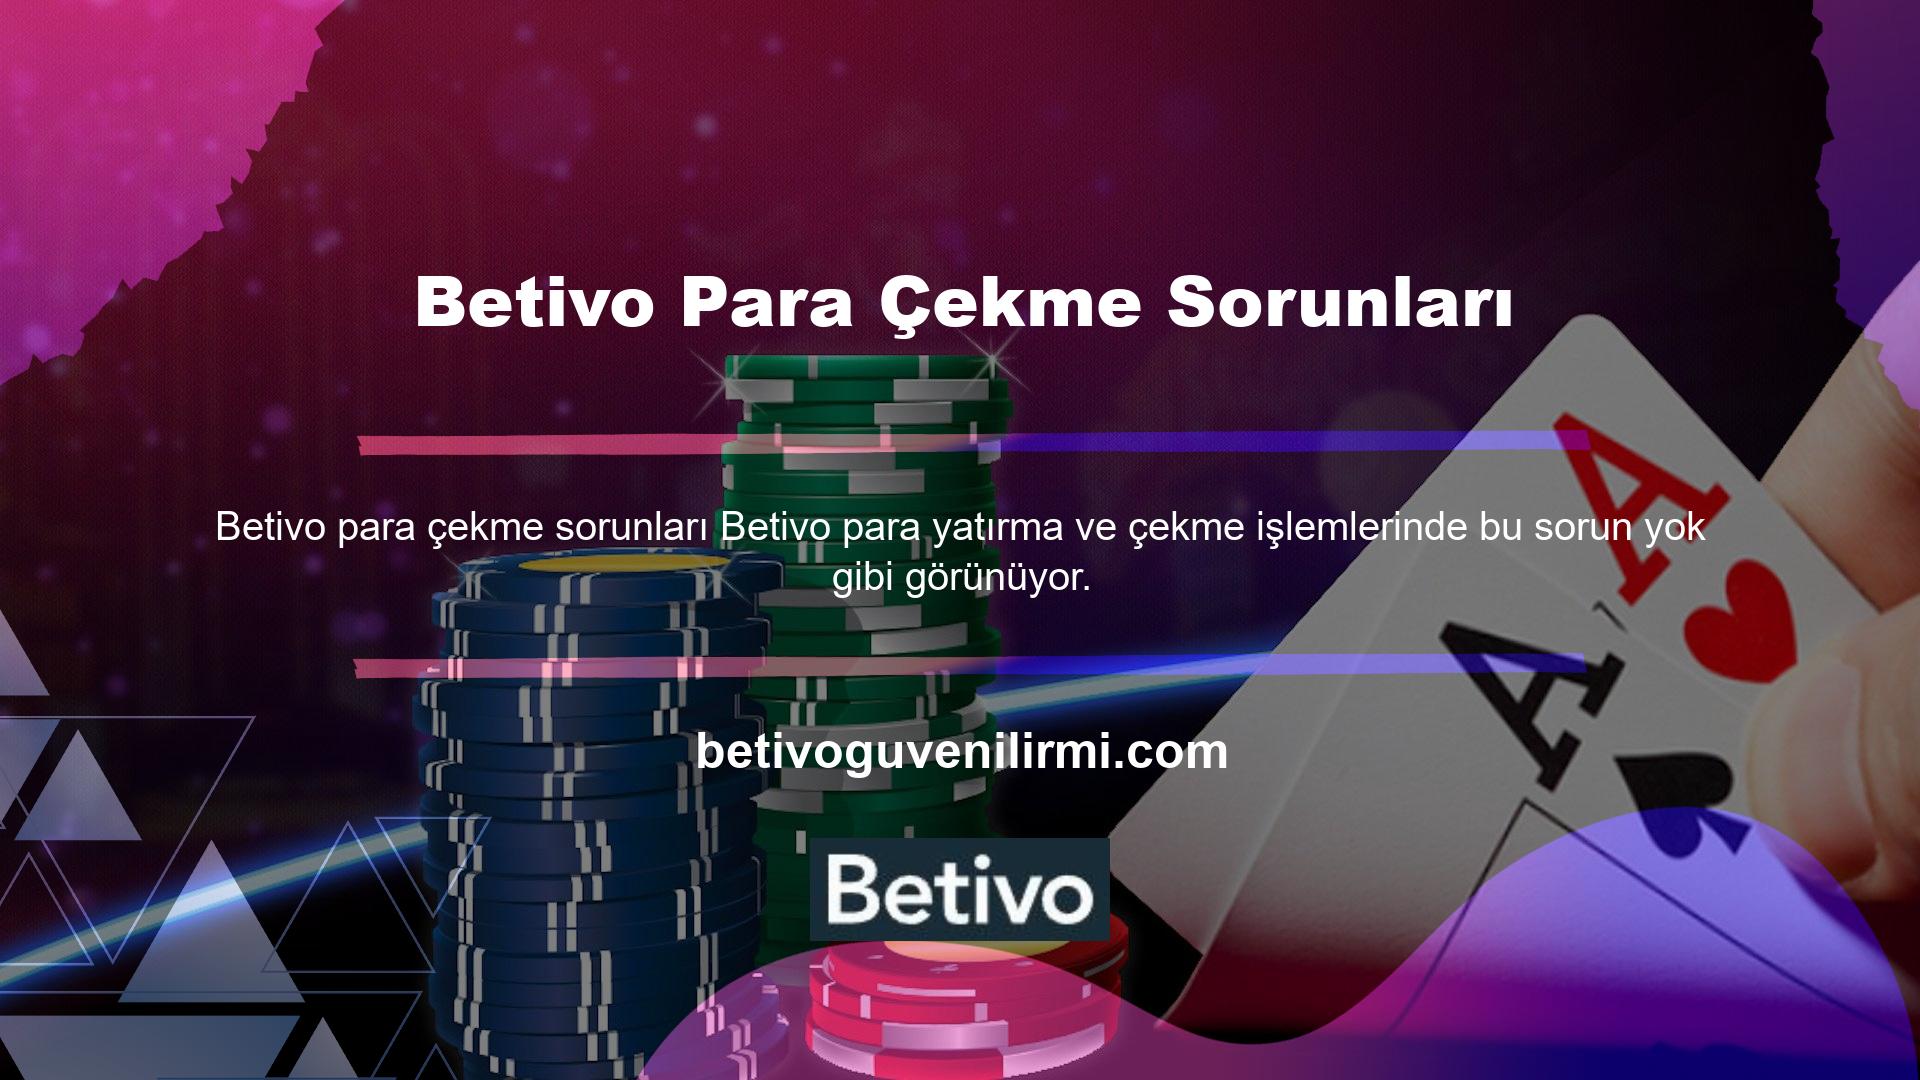 Ayrıca Betivo üyelerinin para çekme işlemi ile ilgili birçok yorumda bulundukları görülmektedir